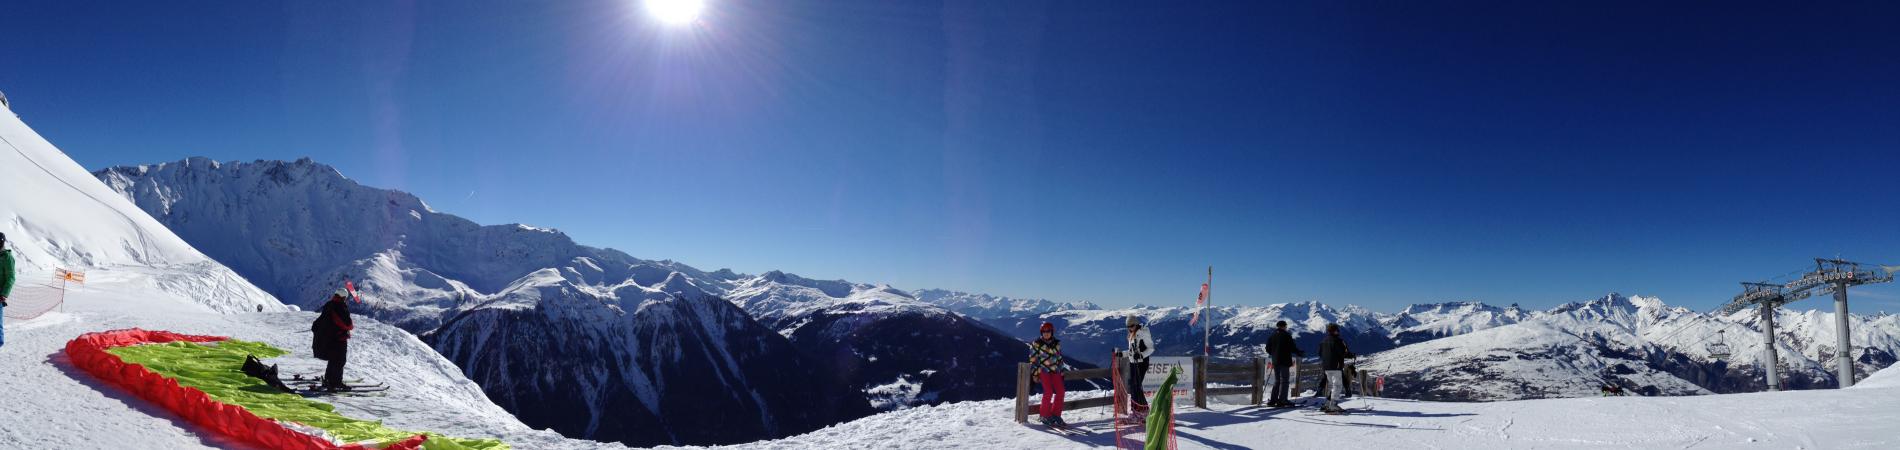 Image for Top Ski Resorts in France